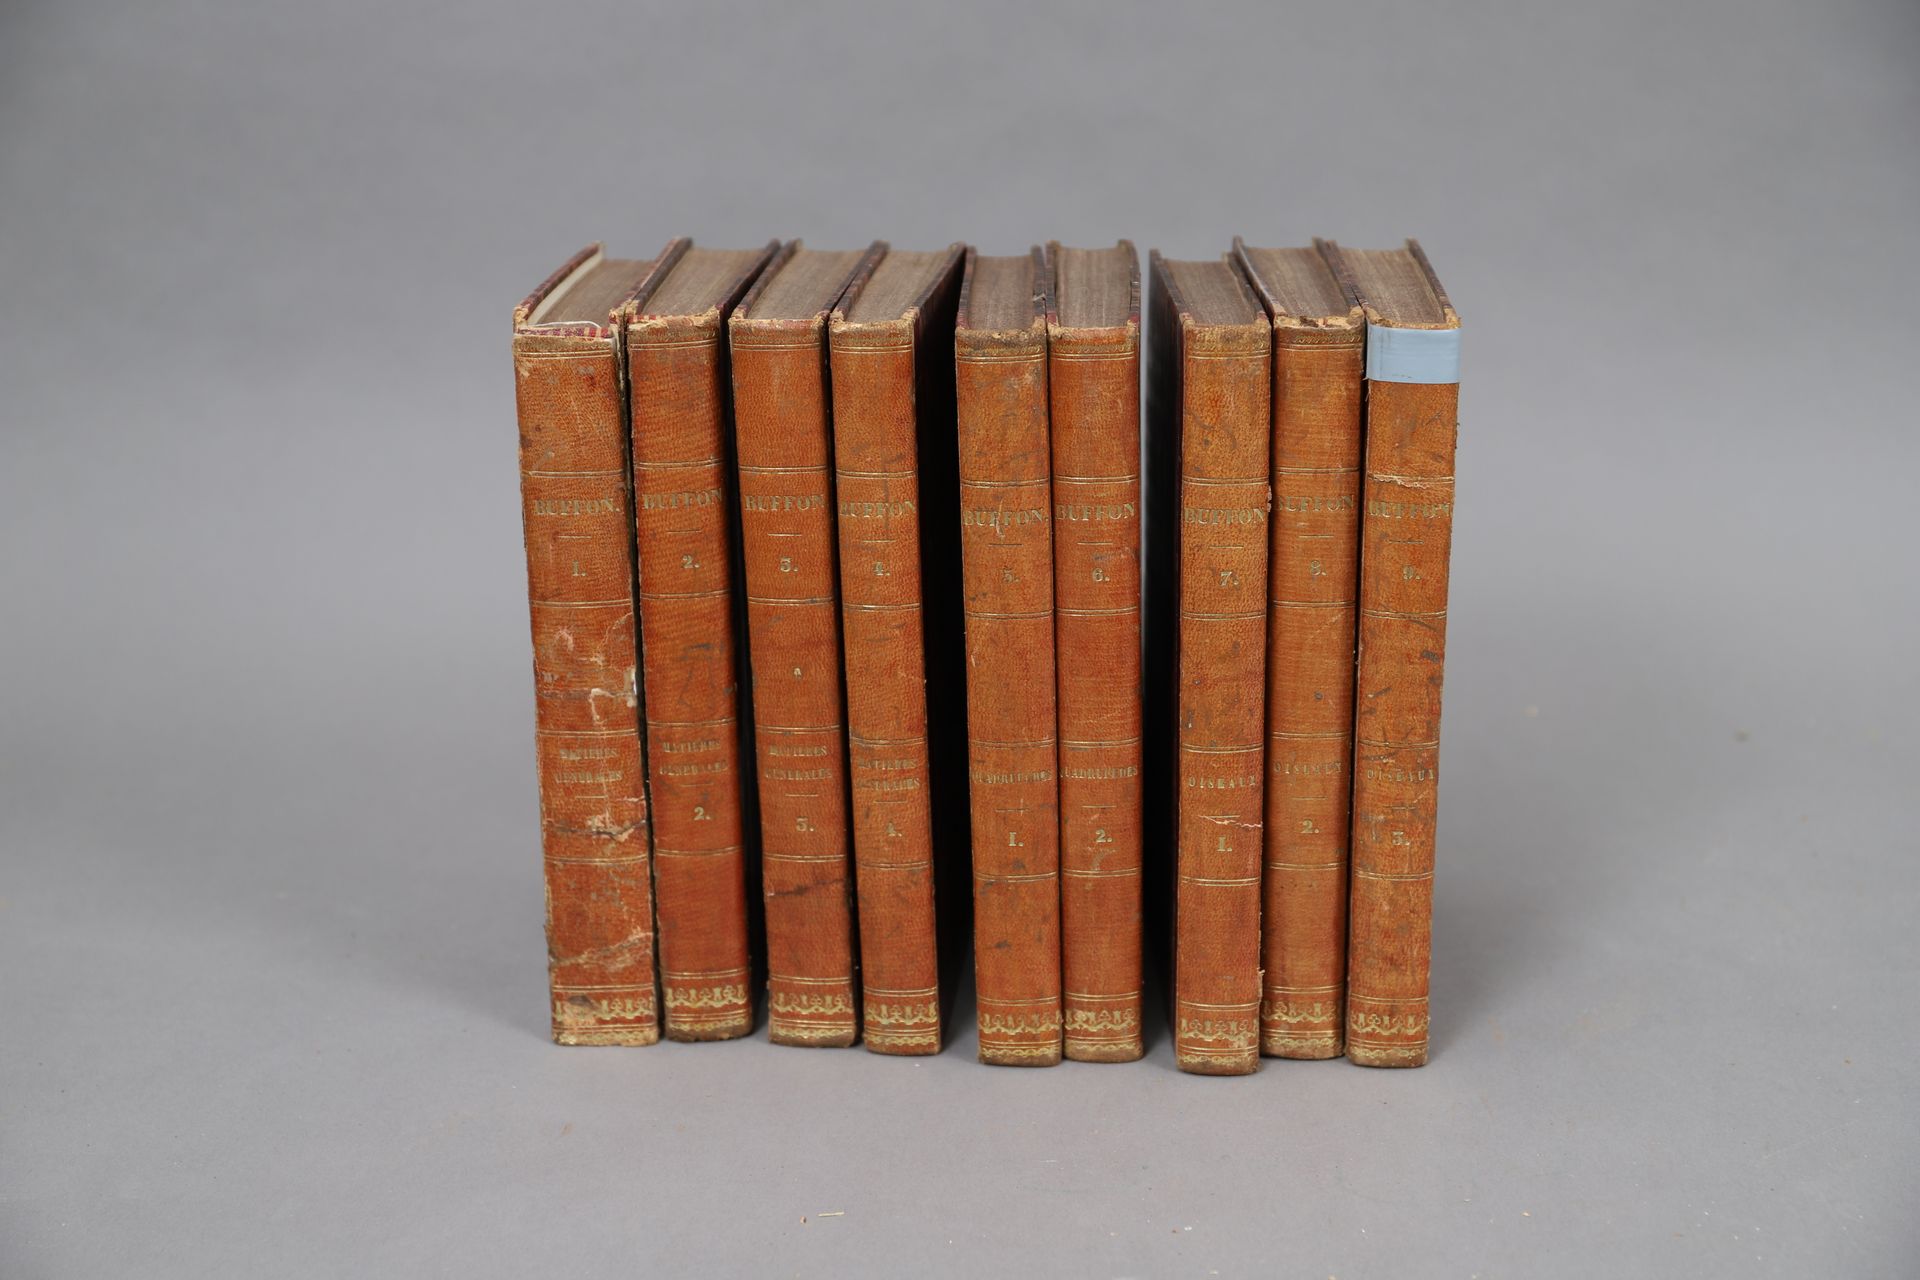 Null OBRAS DE BUFFON

París 1835, 

9 volúmenes encuadernados.